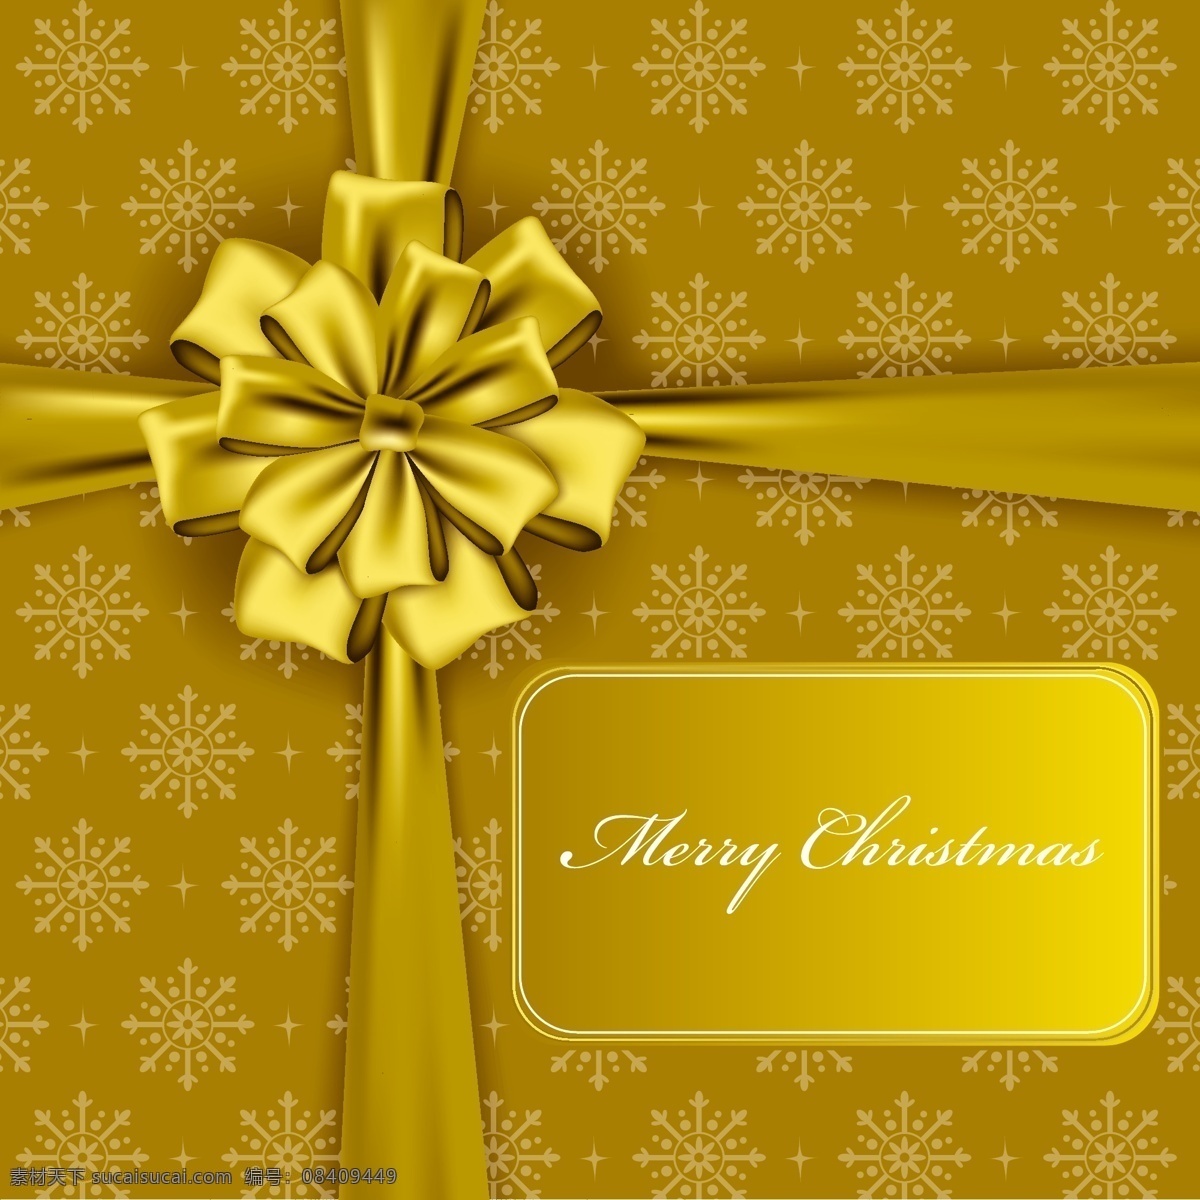 金色 华丽 圣诞节 元素 背景 christmas merry 边框 蝴蝶结 模板 设计稿 丝带 雪花 图案 节日大全 源文件 节日素材